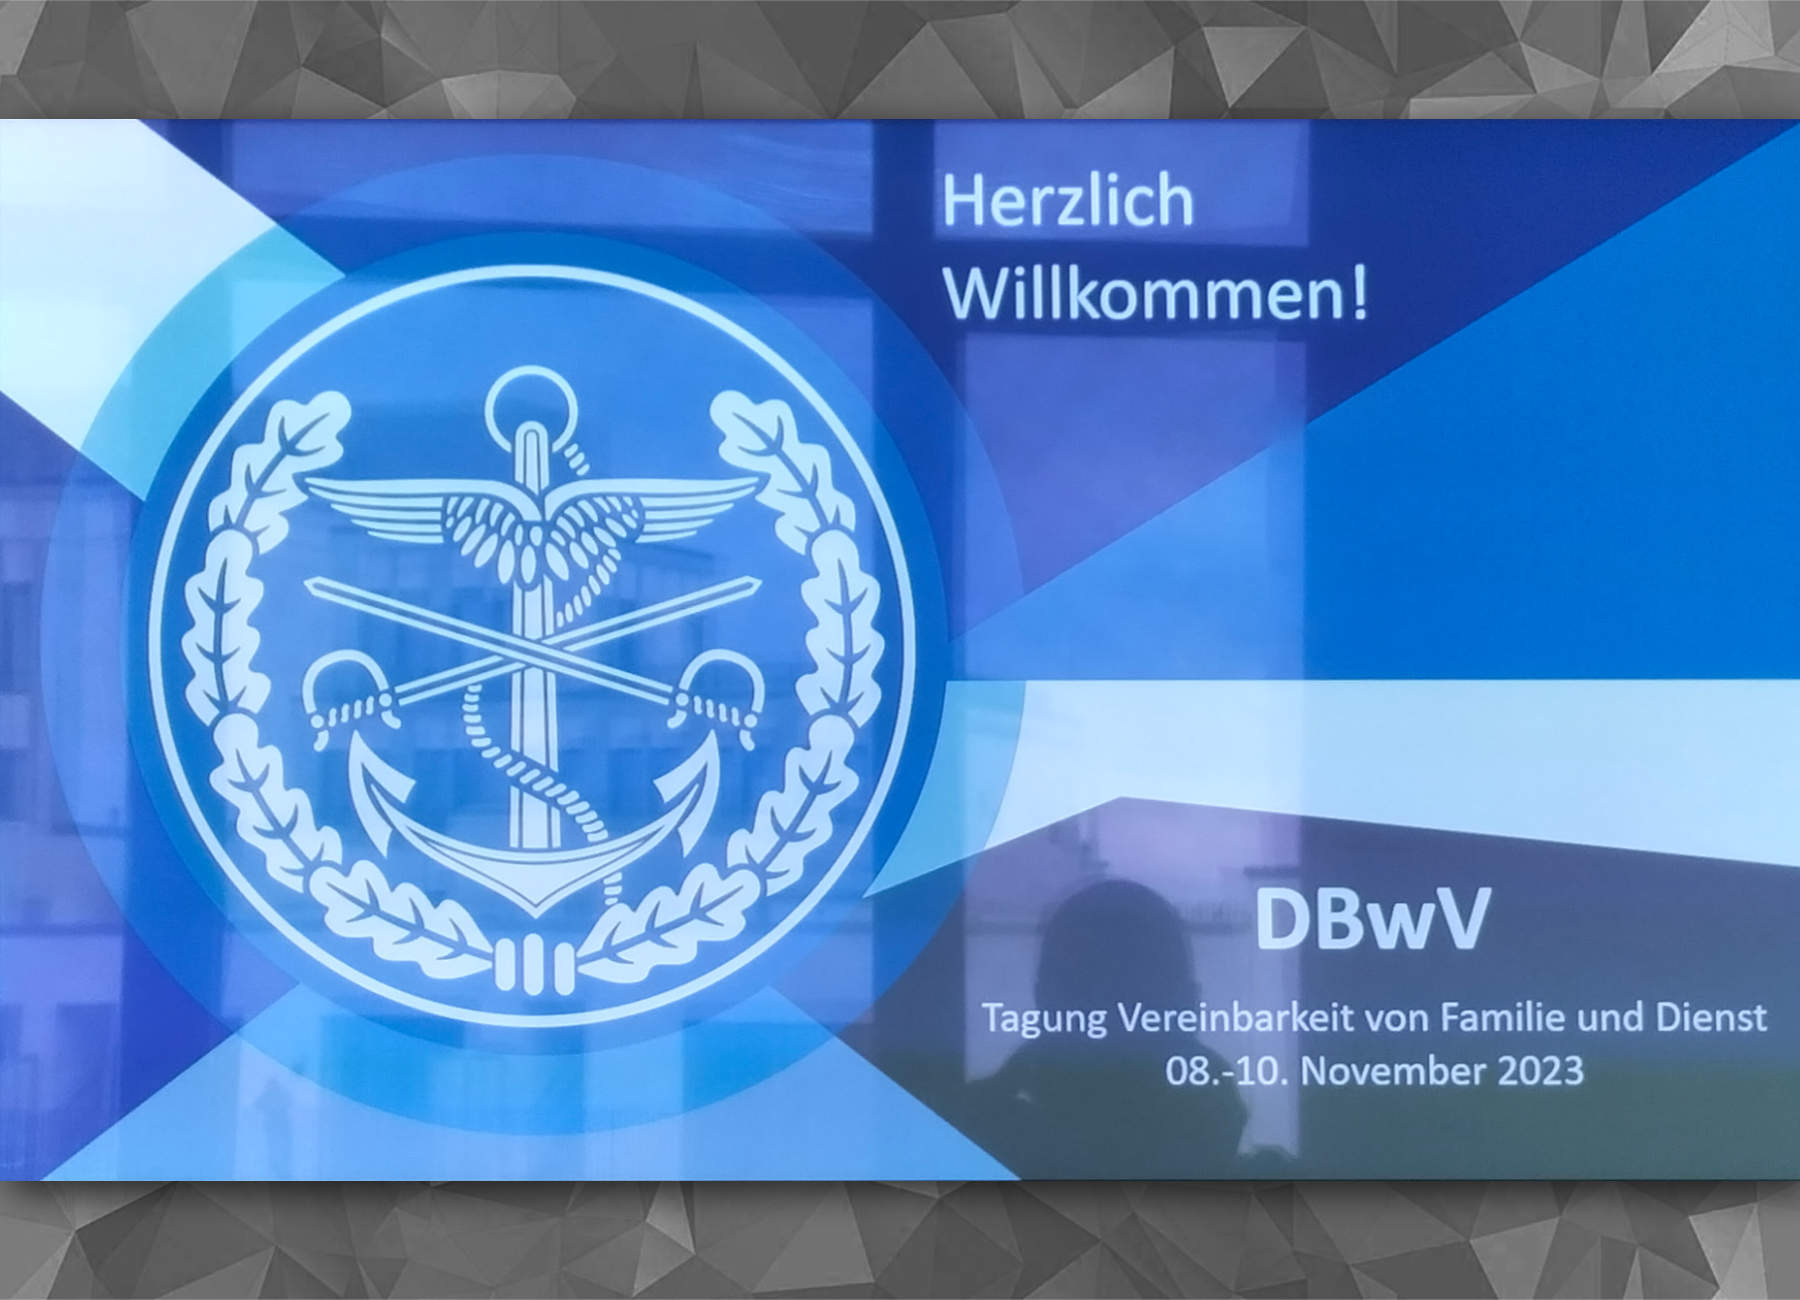 Bericht über die Tagung Vereinbarkeit und Familie/Dienst des Deutschen Bundeswehrverbandes am 08.-10.11.2023 in Berlin